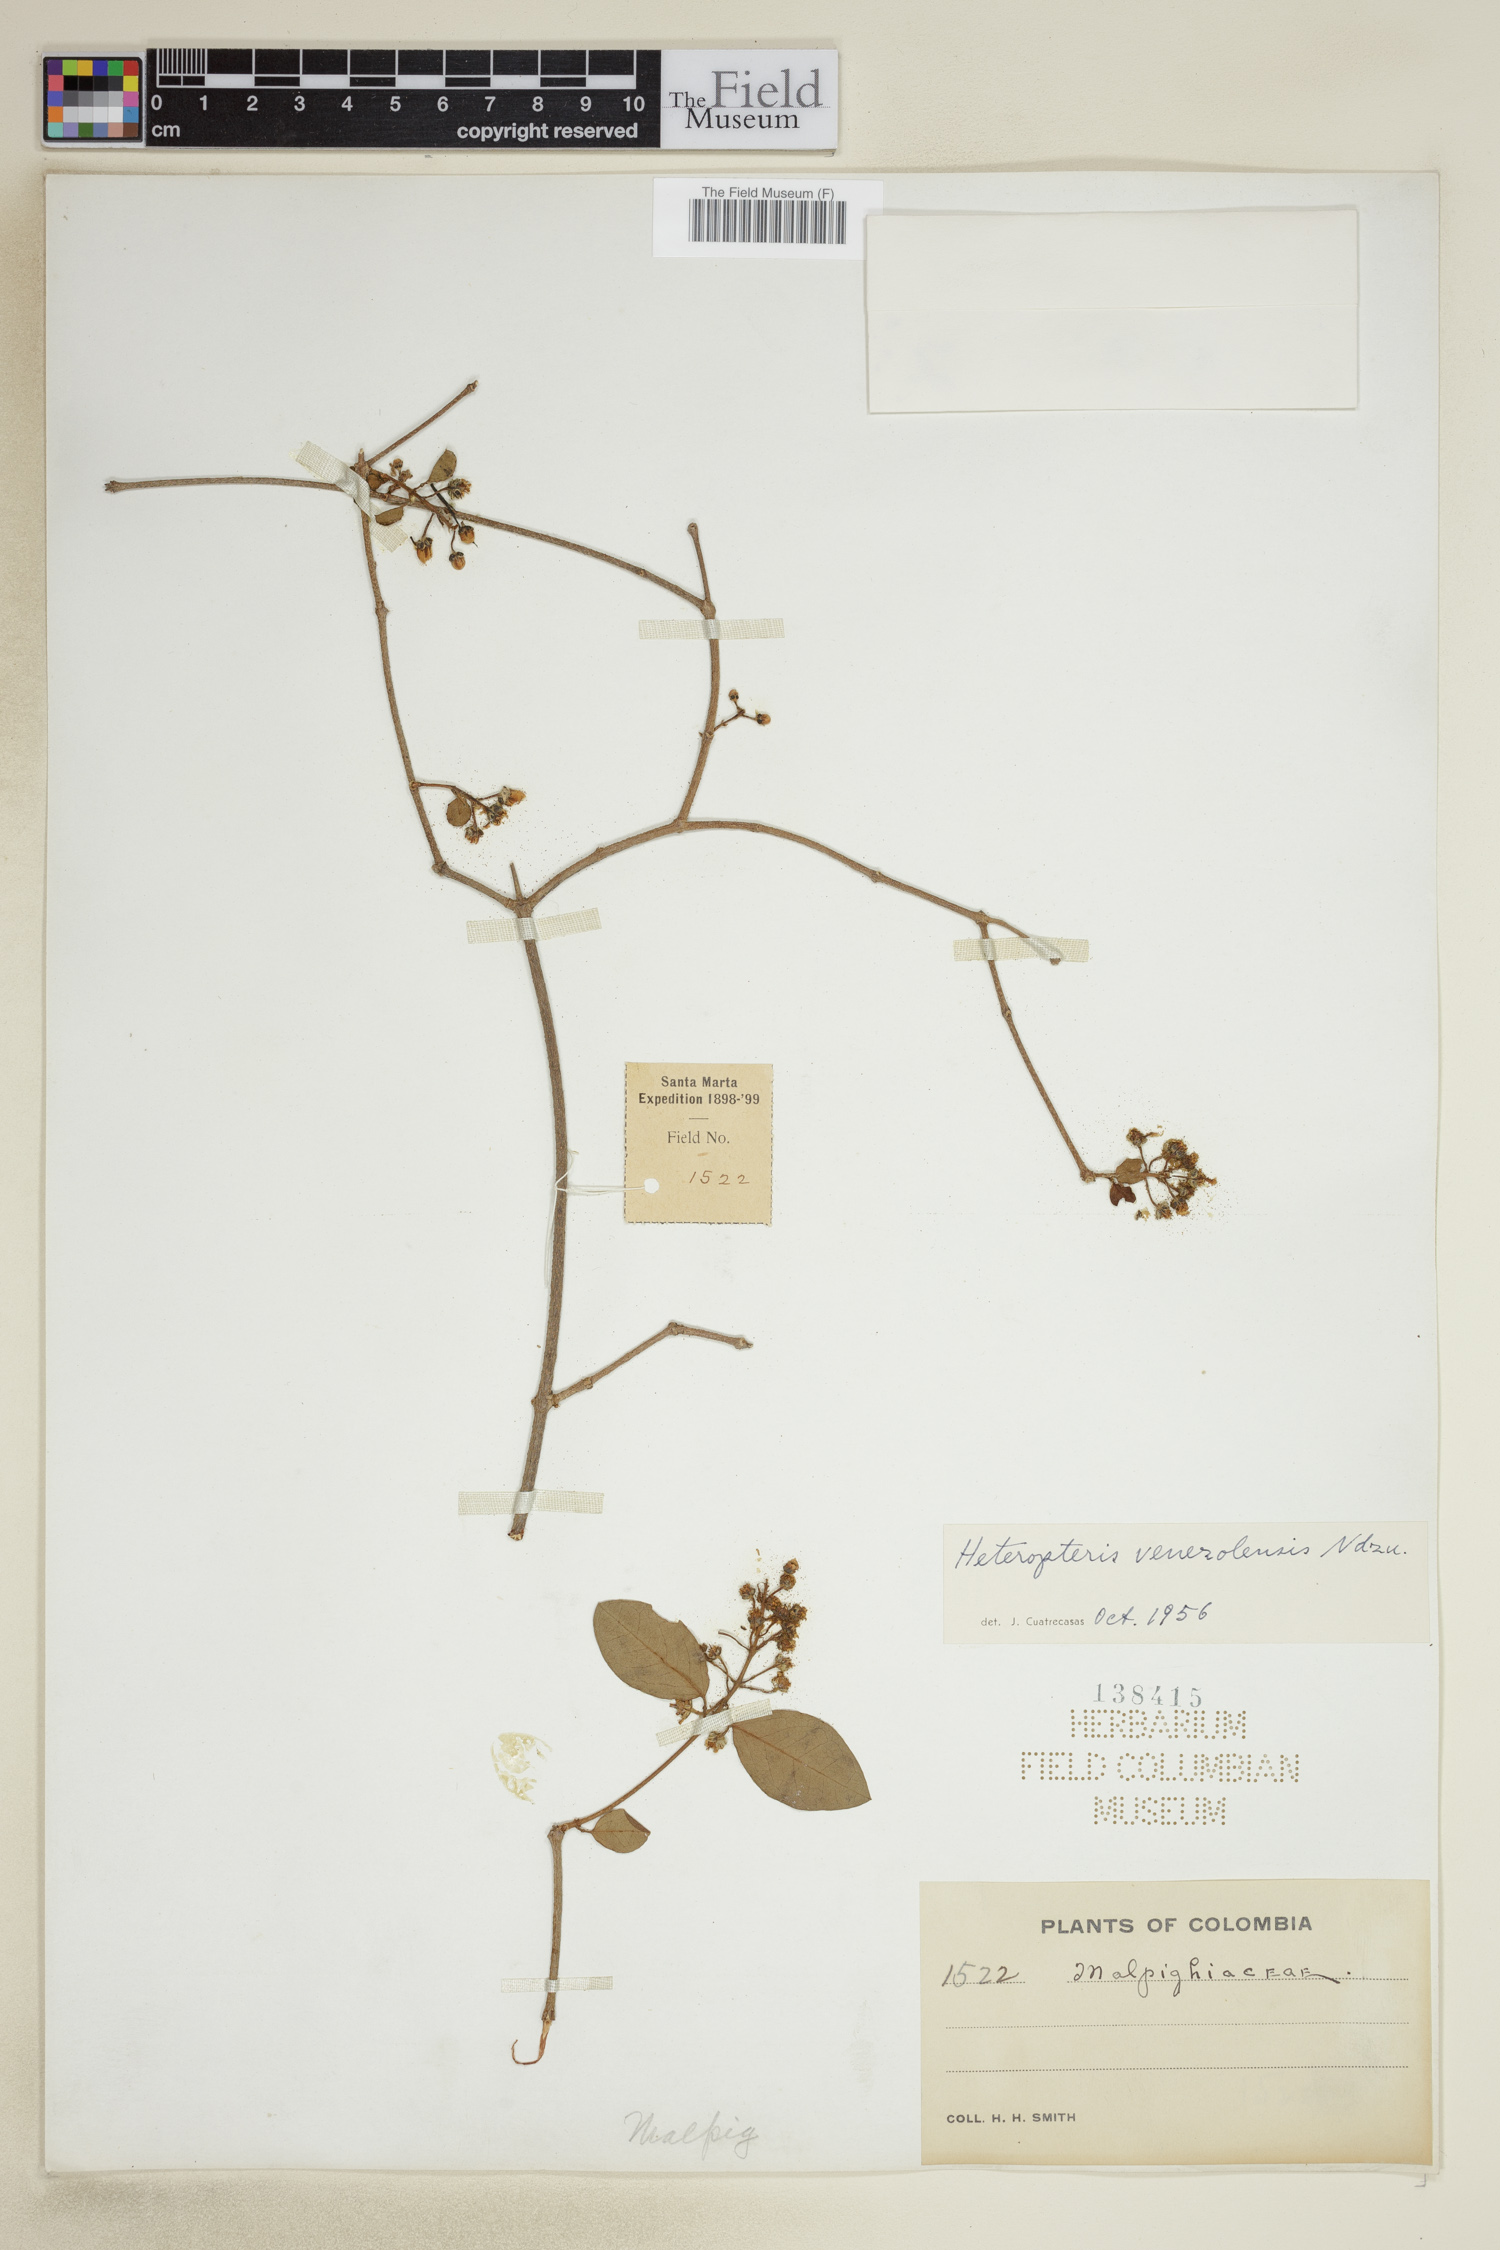 Heteropterys prunifolia image